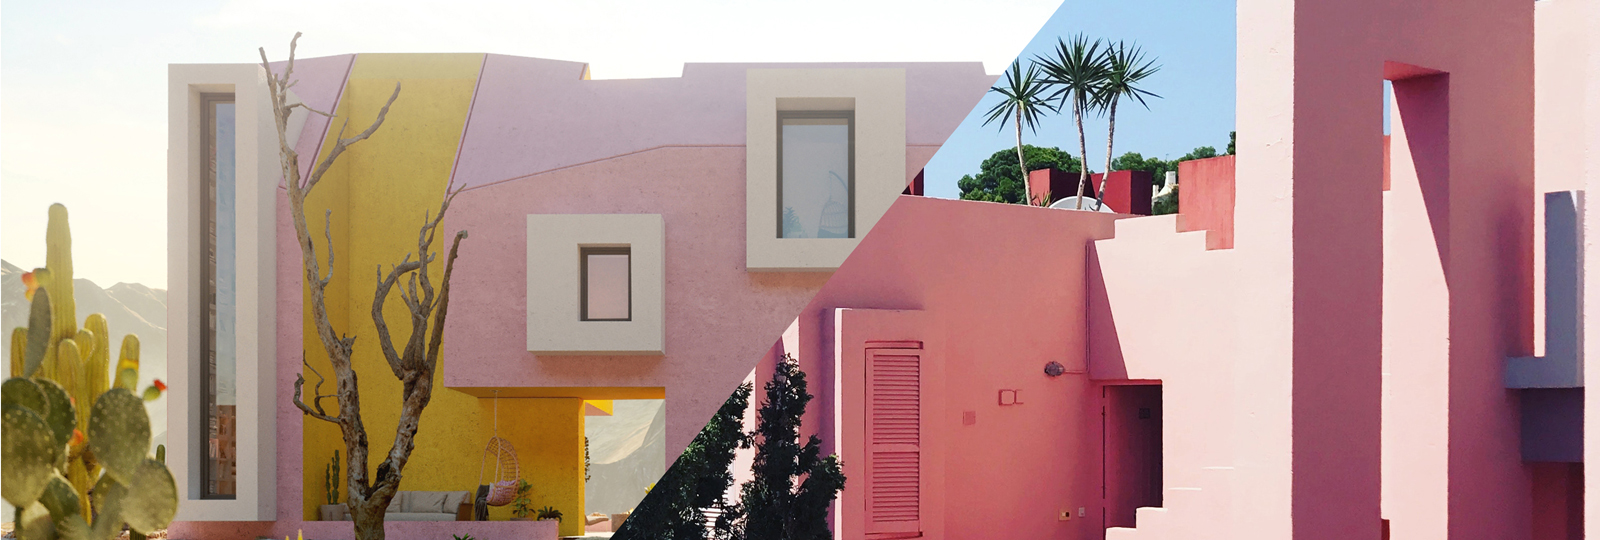 Rosafarbene Architektur: La Muralla Roja und Sonora House